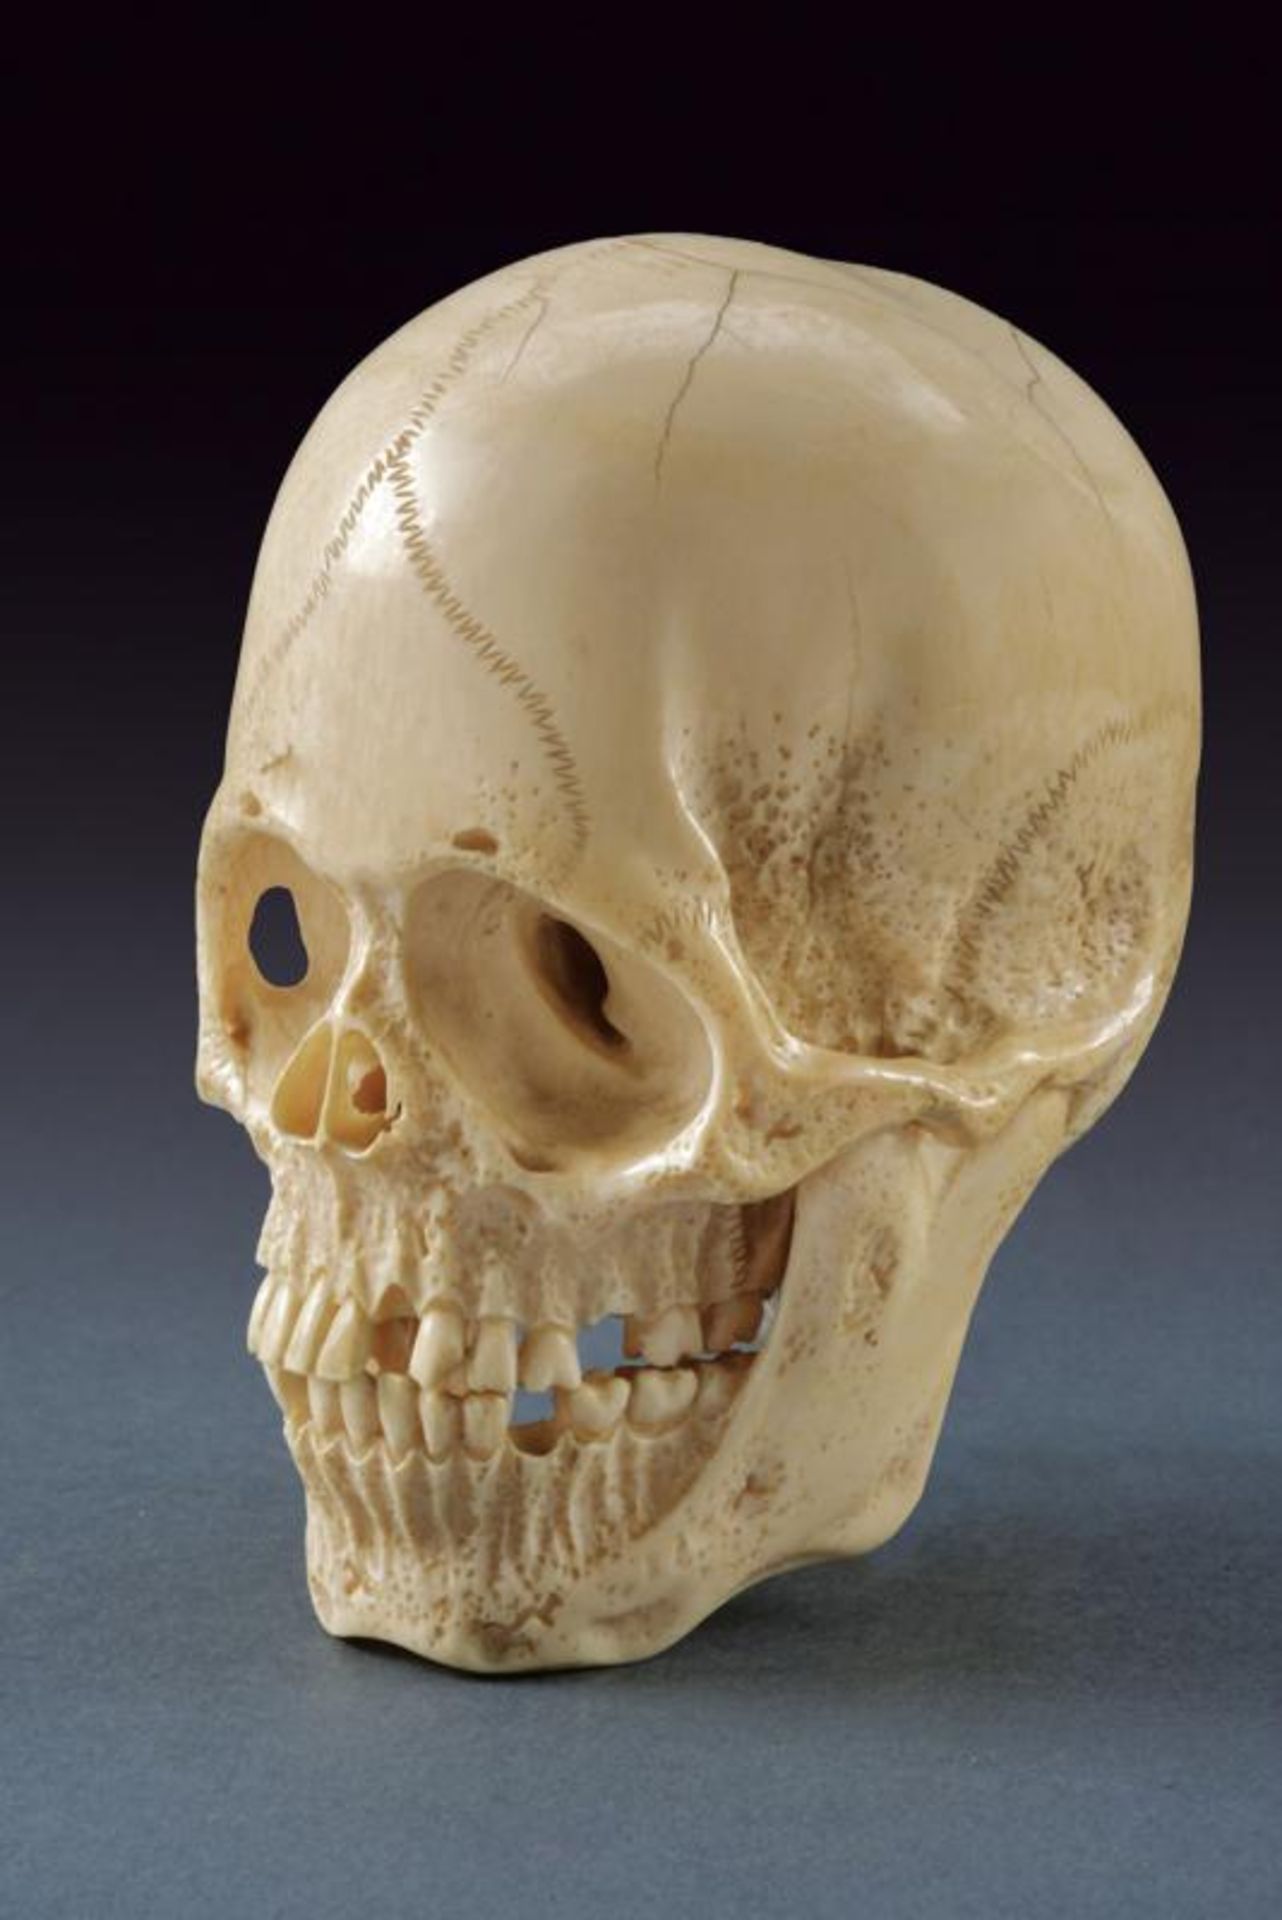 A magnificent skull-shaped okimono